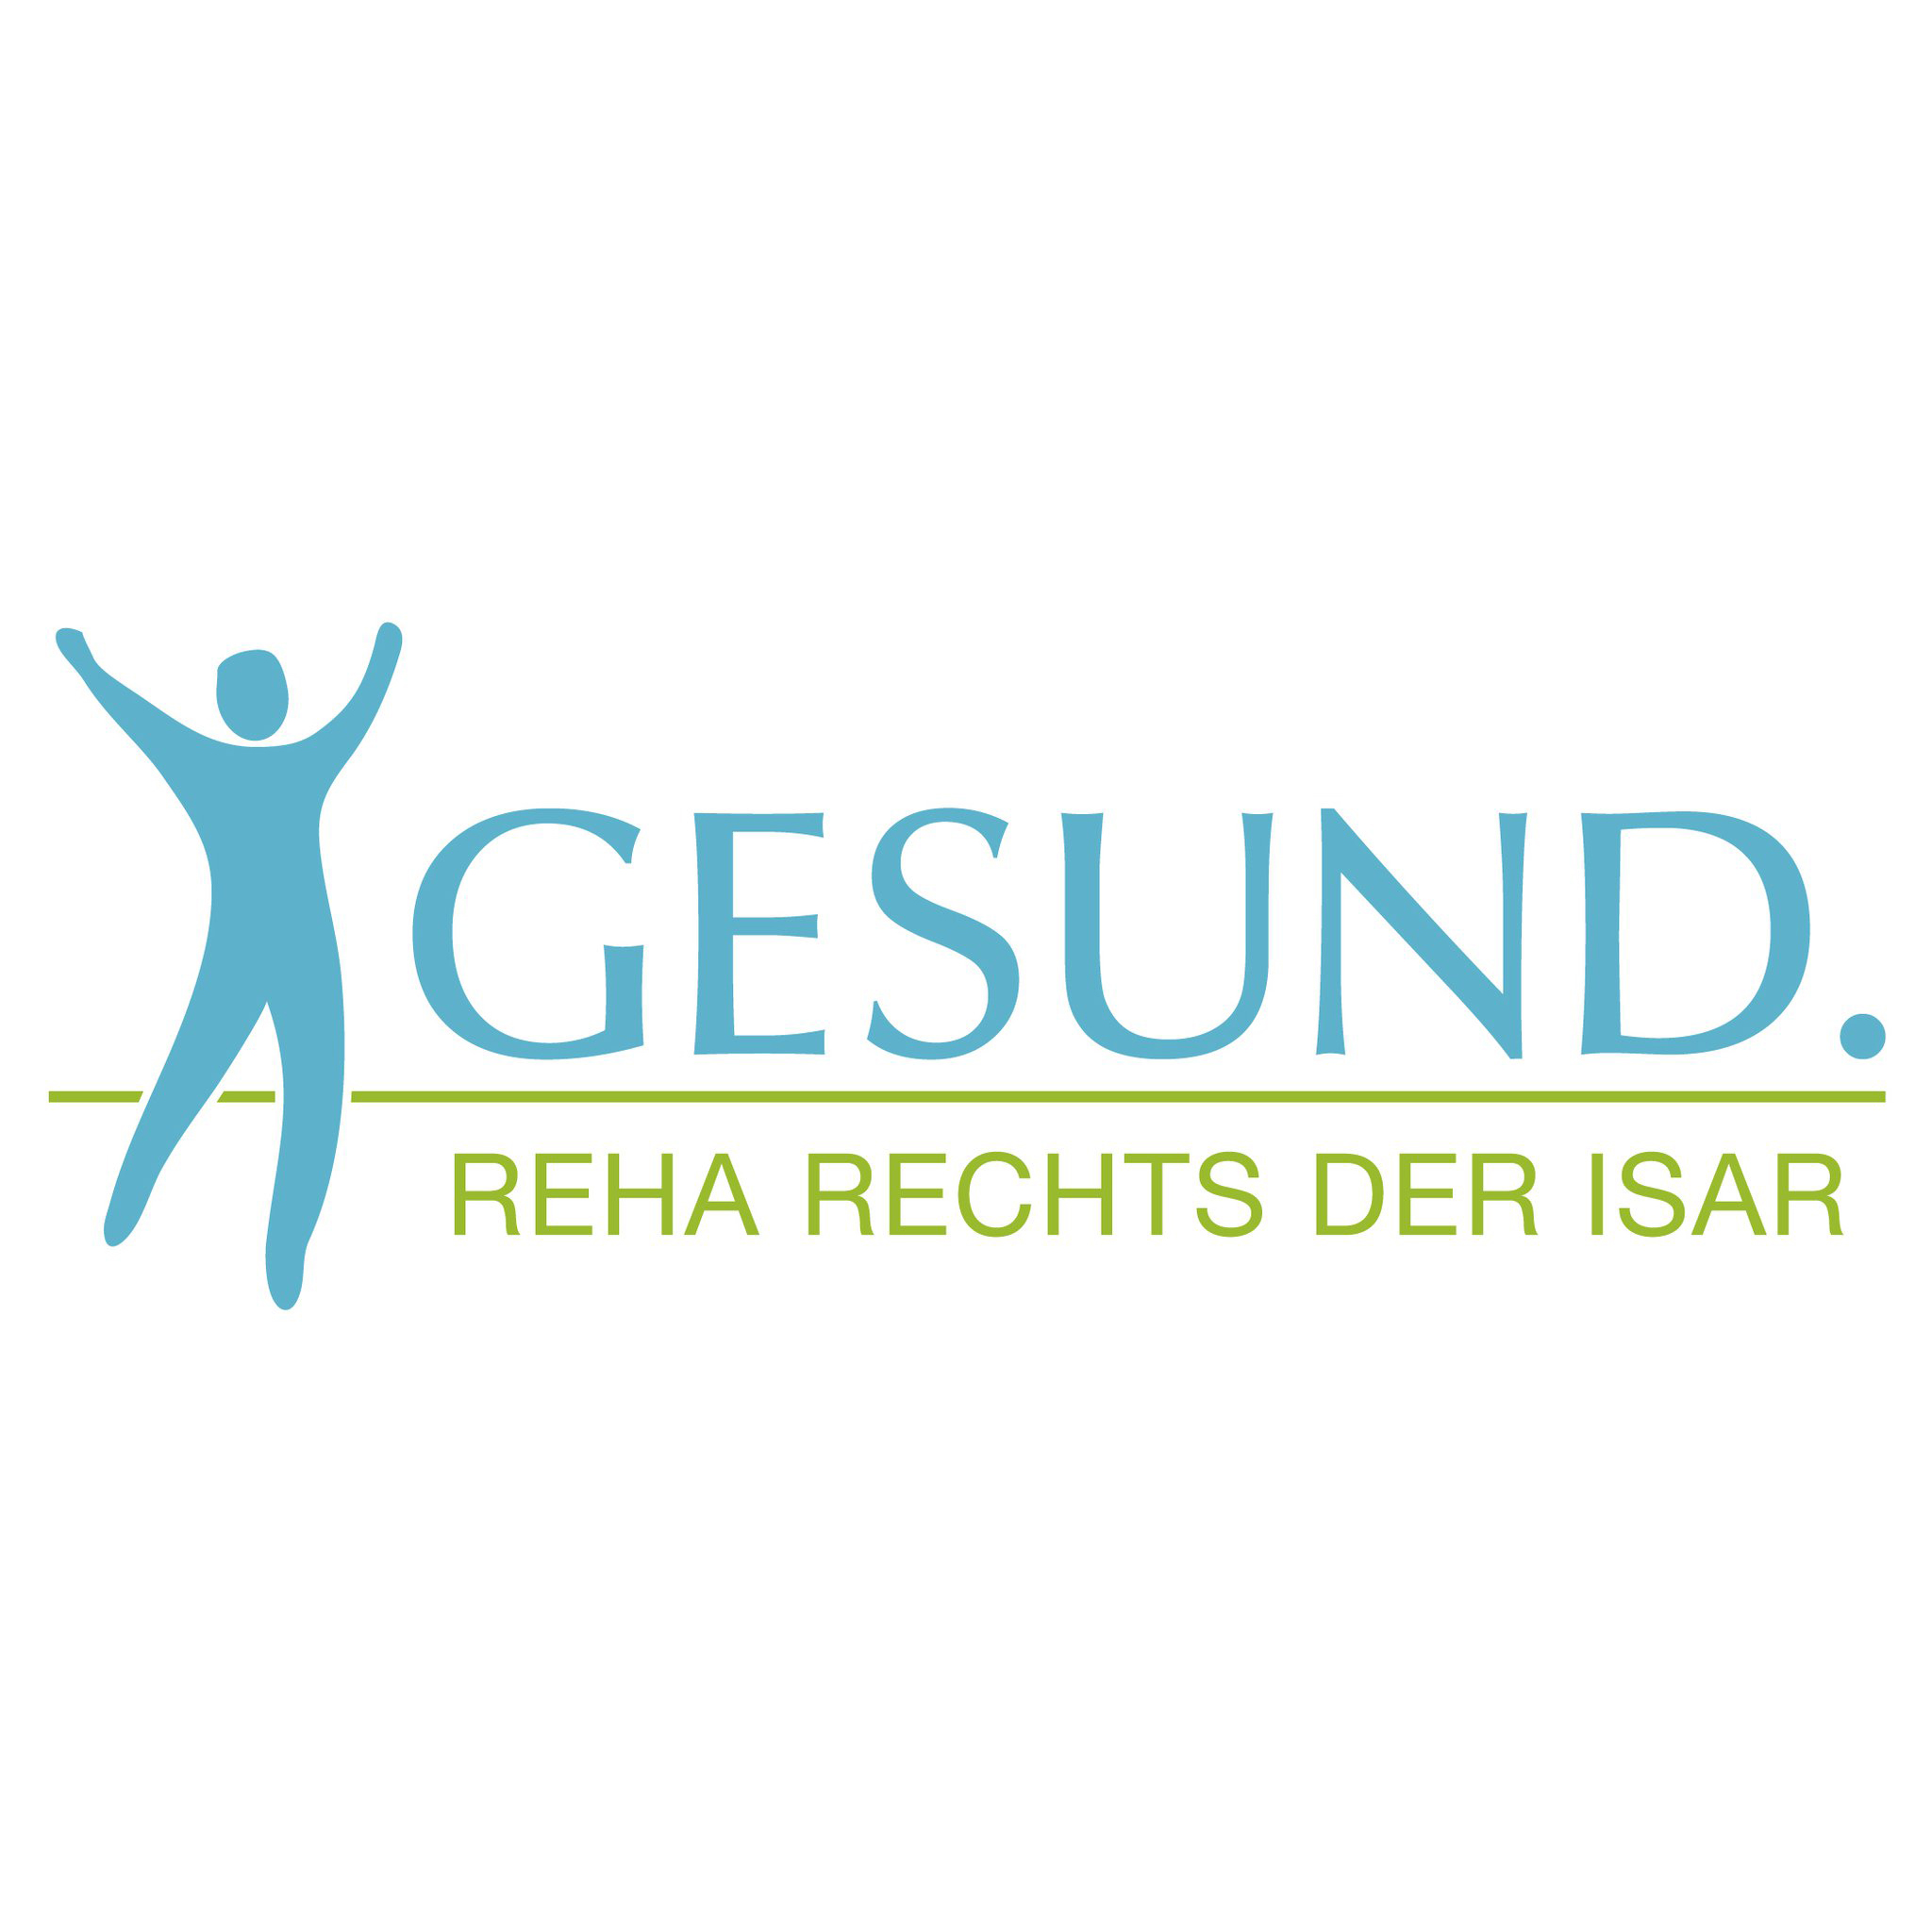 Bild 1 GESUND. Reha rechts der Isar GmbH in München